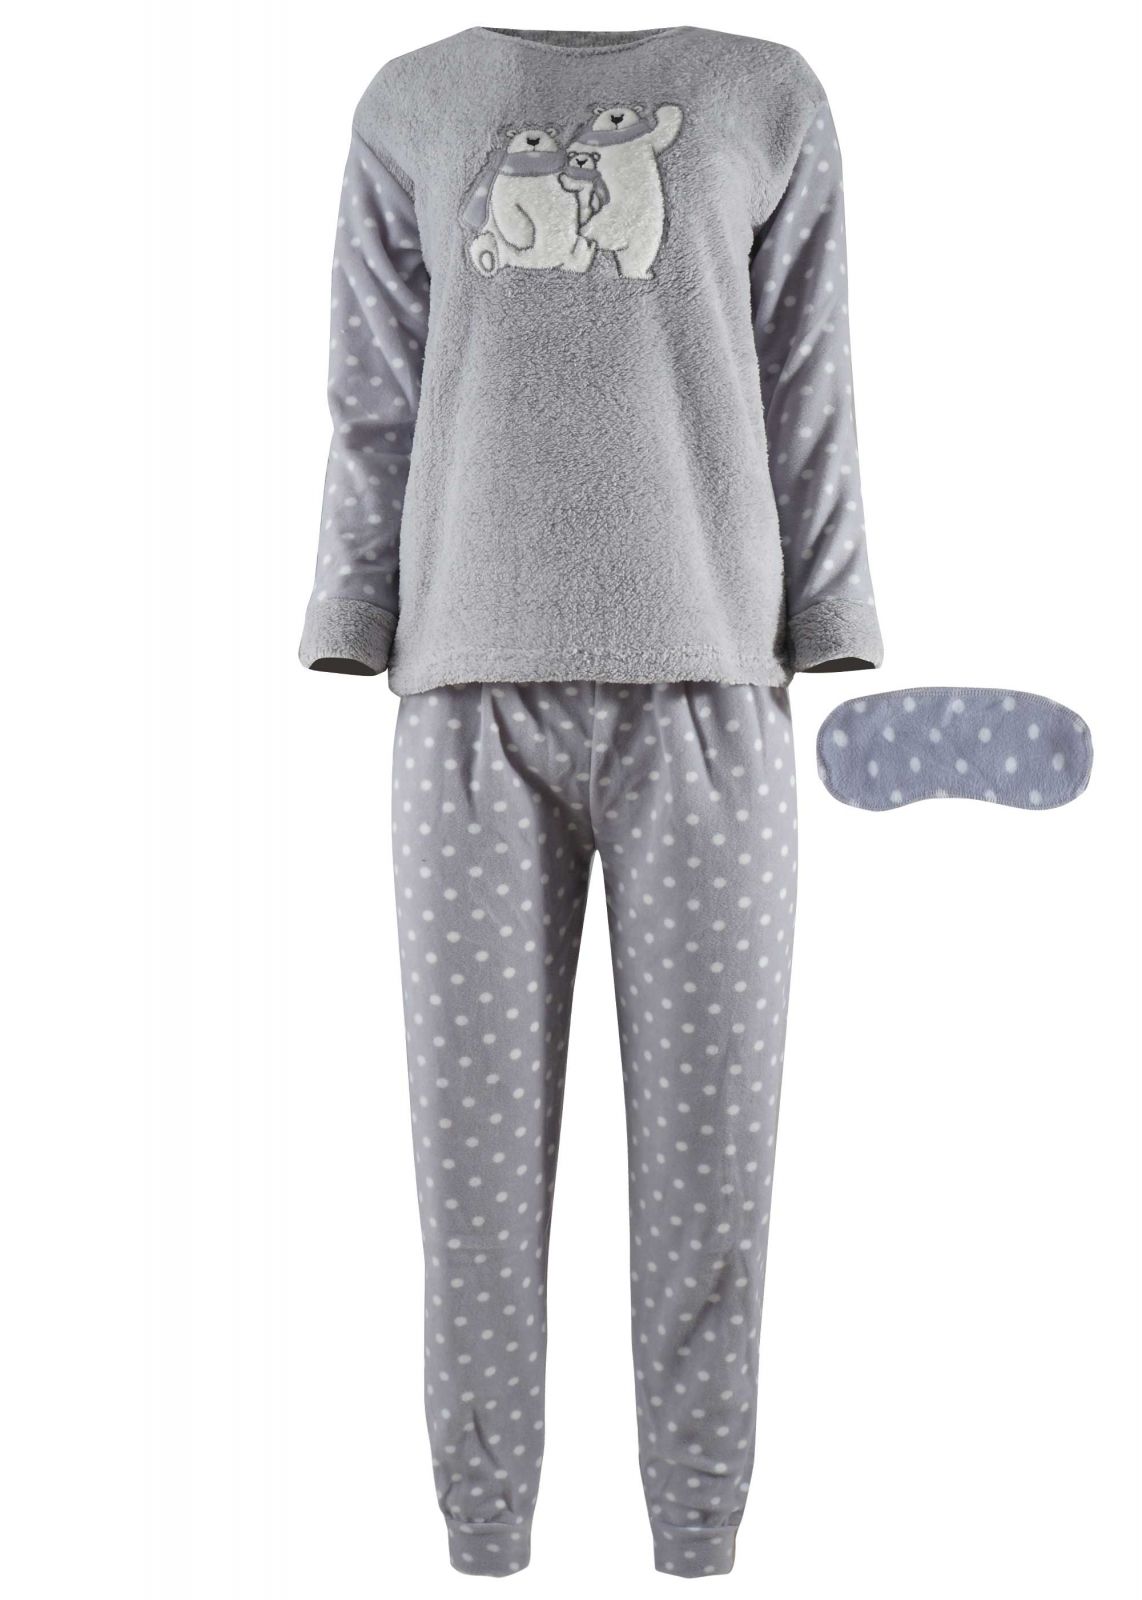 Γυναικεία πιτζάμα fleece fawn & μάσκα ύπνου, print pois παντελόνι.